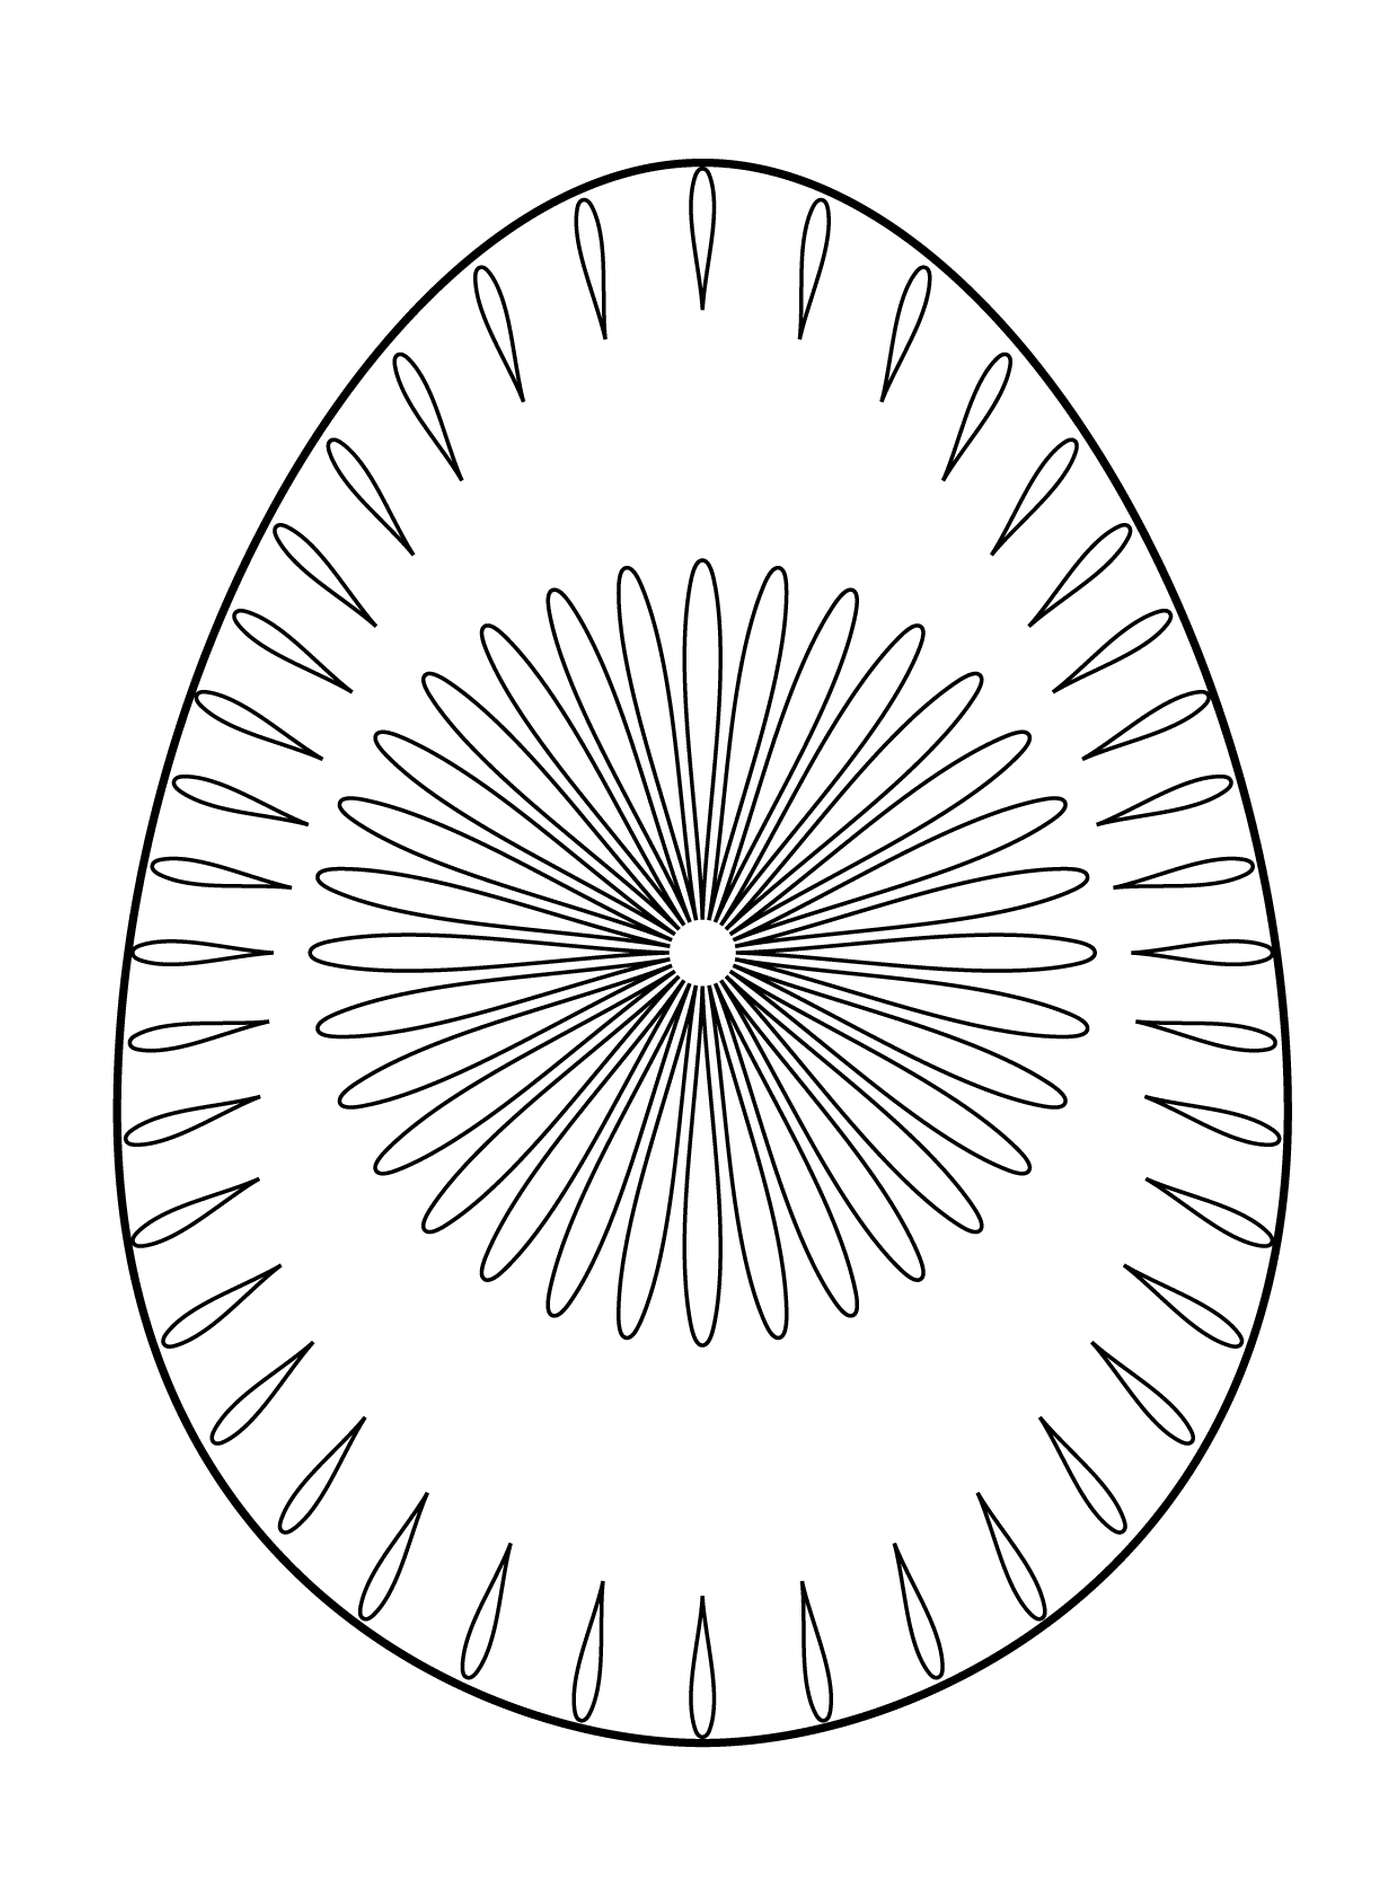  Пасхальное яйцо с цветочным рисунком 2, яйцо с круговым рисунком 